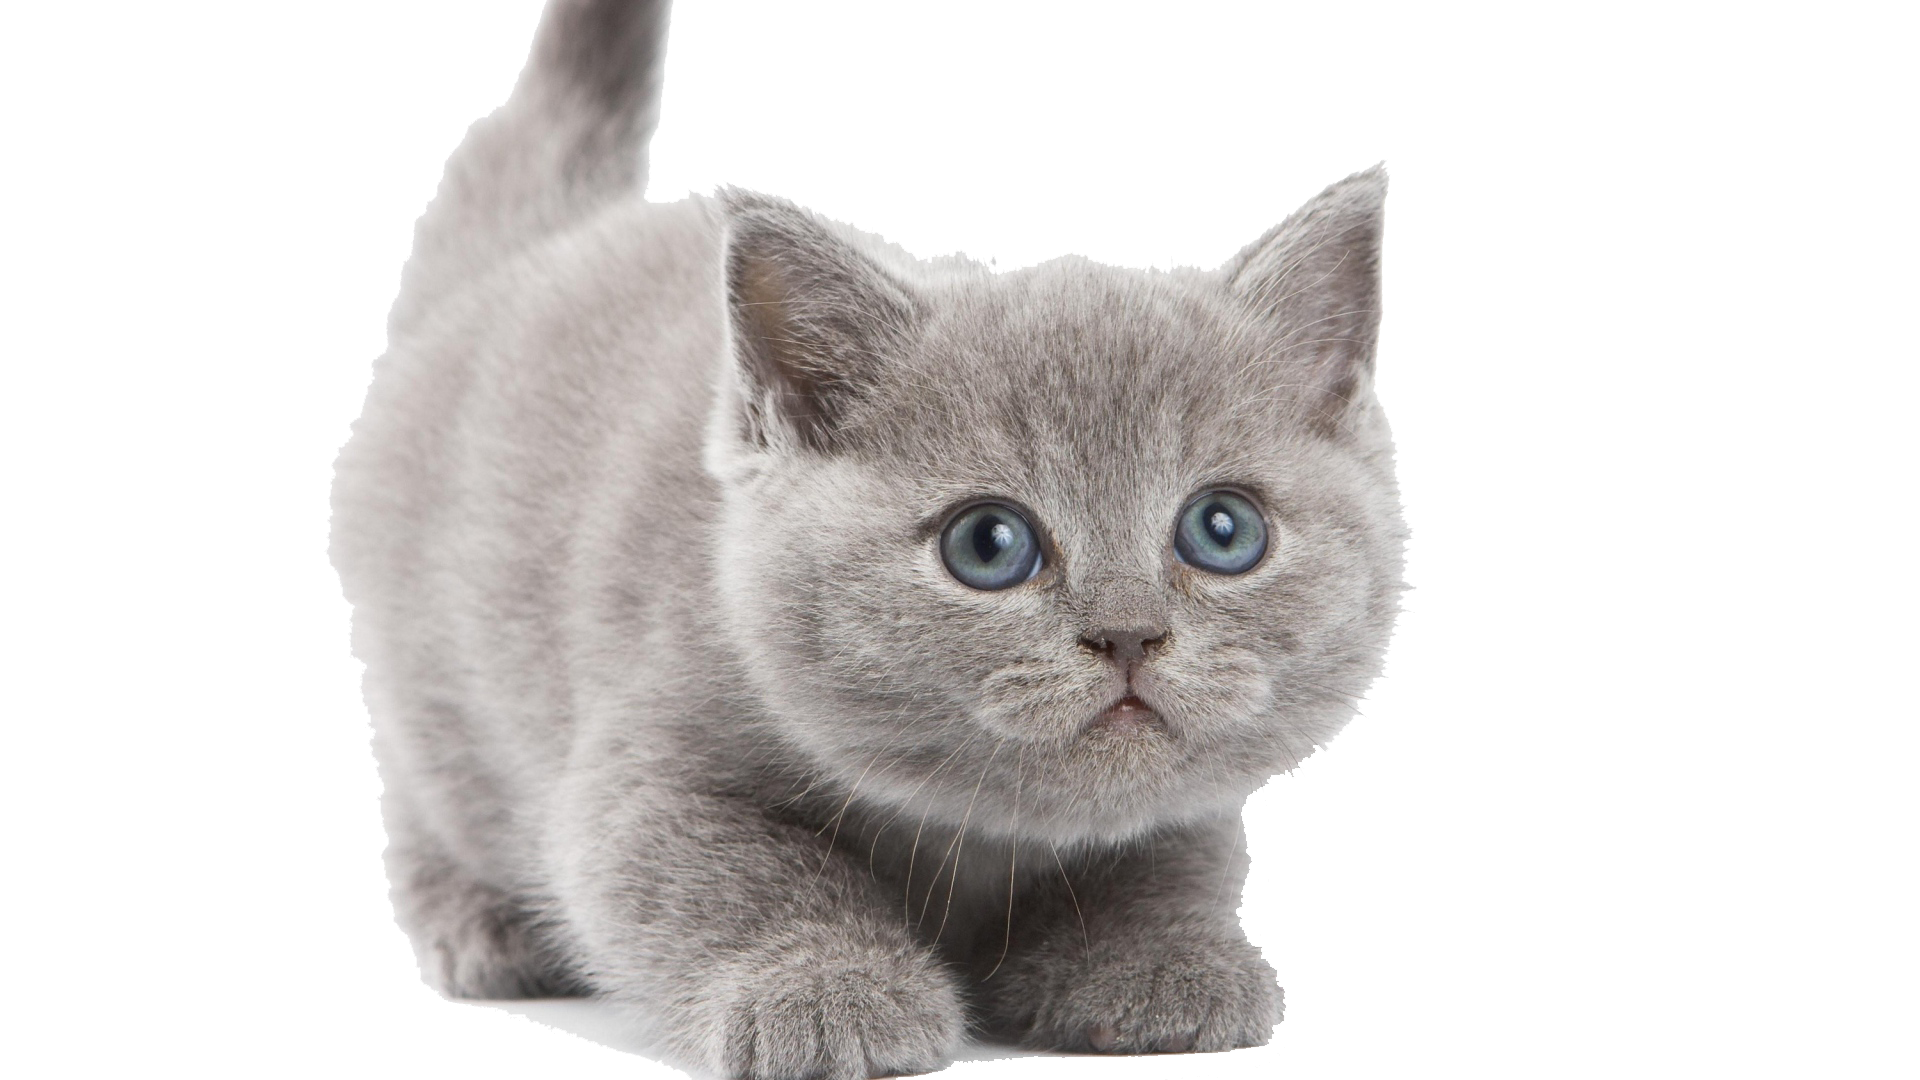 Similar Kitten PNG Image